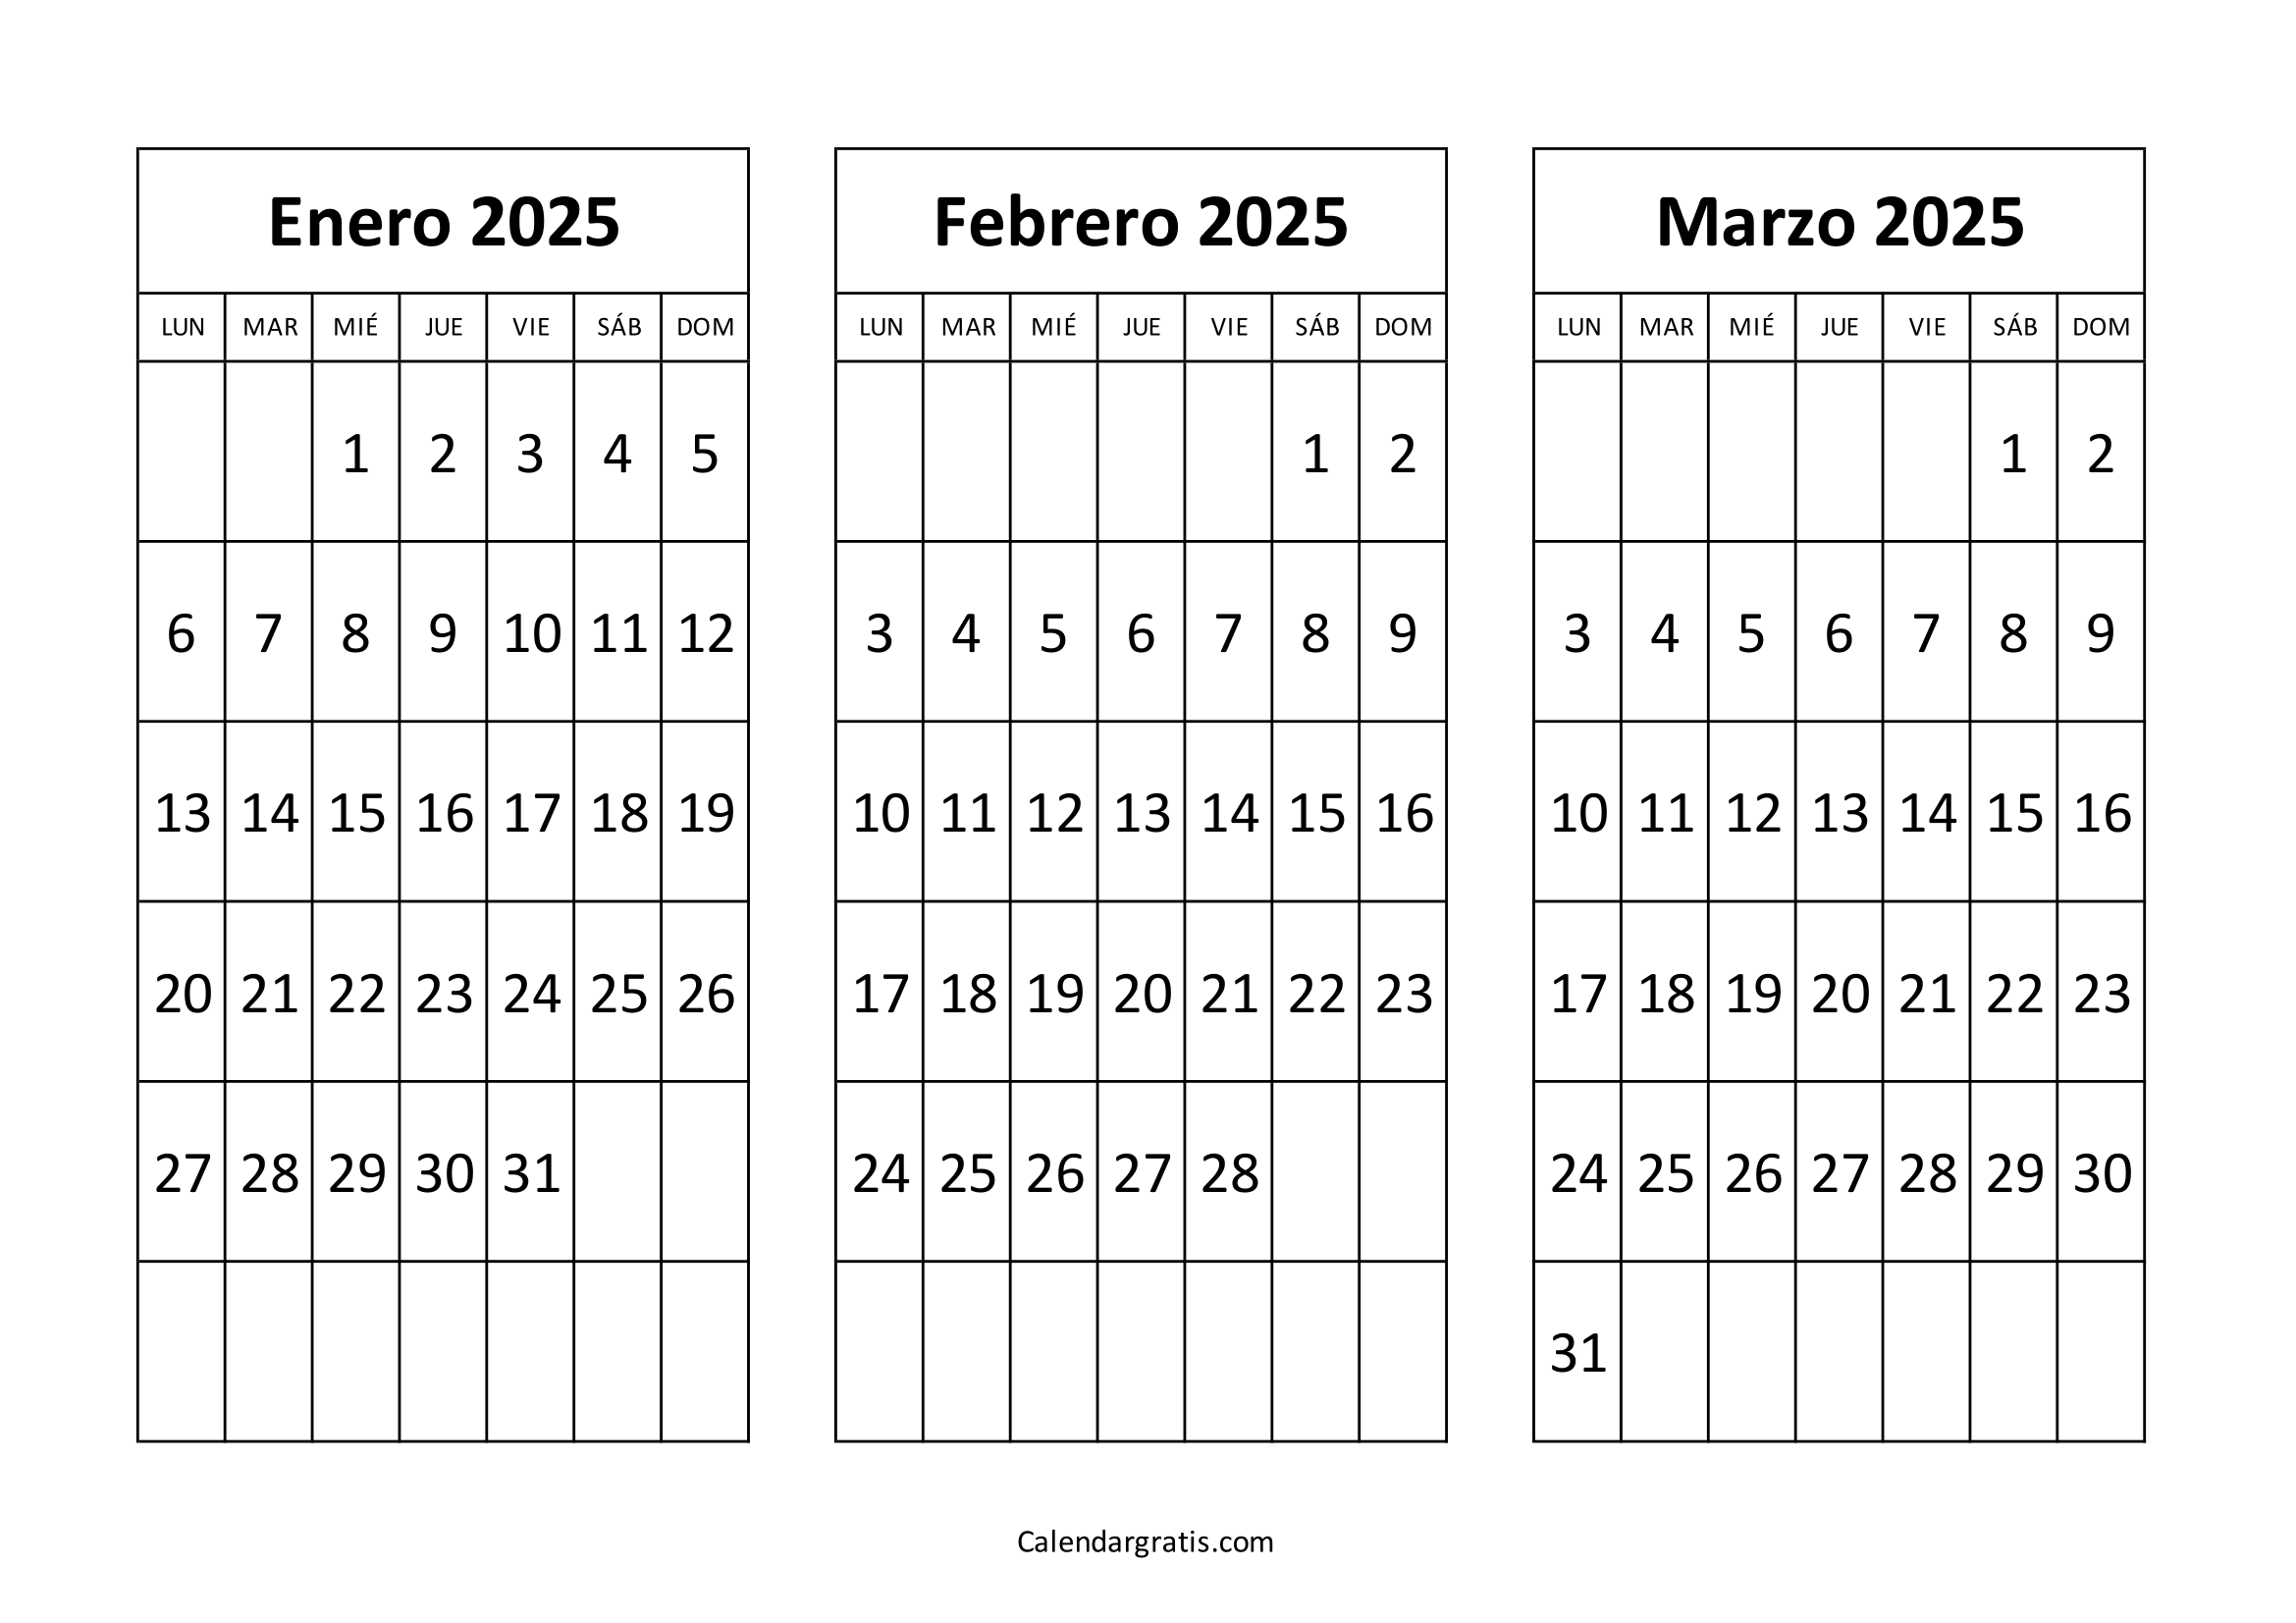 Calendario de enero febrero y marzo 2025